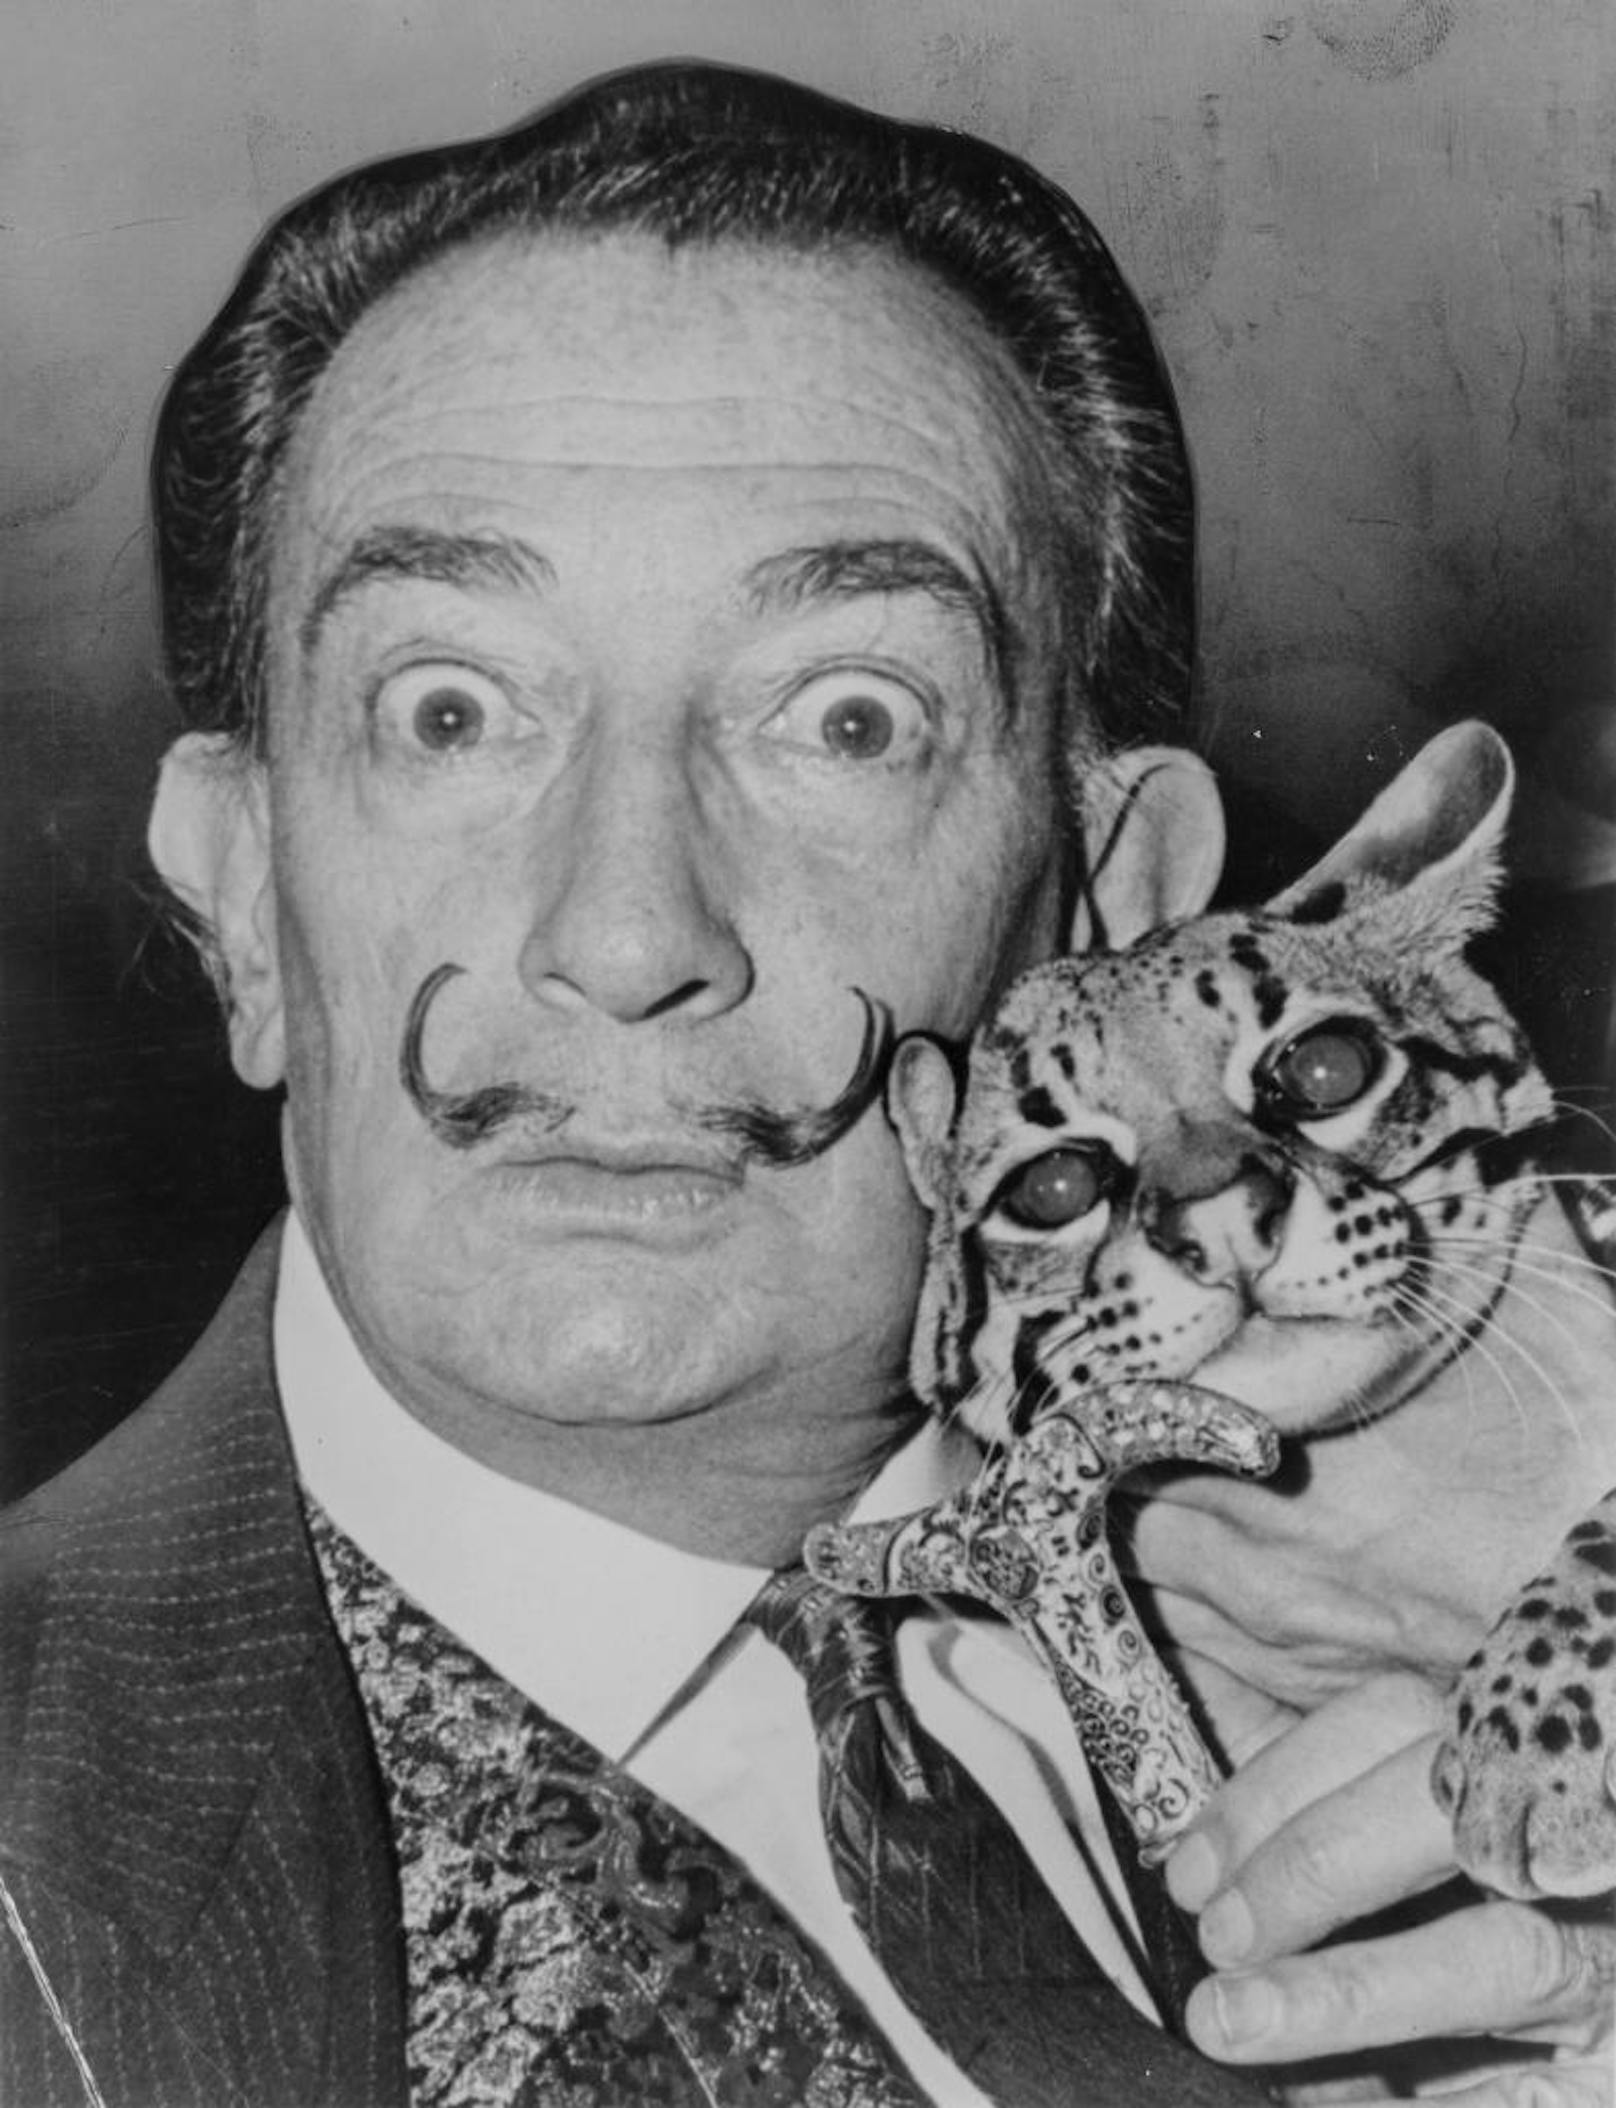 Salvador Dalí im Jahr 1965 mit seinem zahmen Ozelot, den er als Haustier hielt. Der gezwirbelte Schnurrbart wurde zu einem ikonischen Markenzeichen und im Buch Dali?s Mustache porträtiert. Foto: Roger Higgins